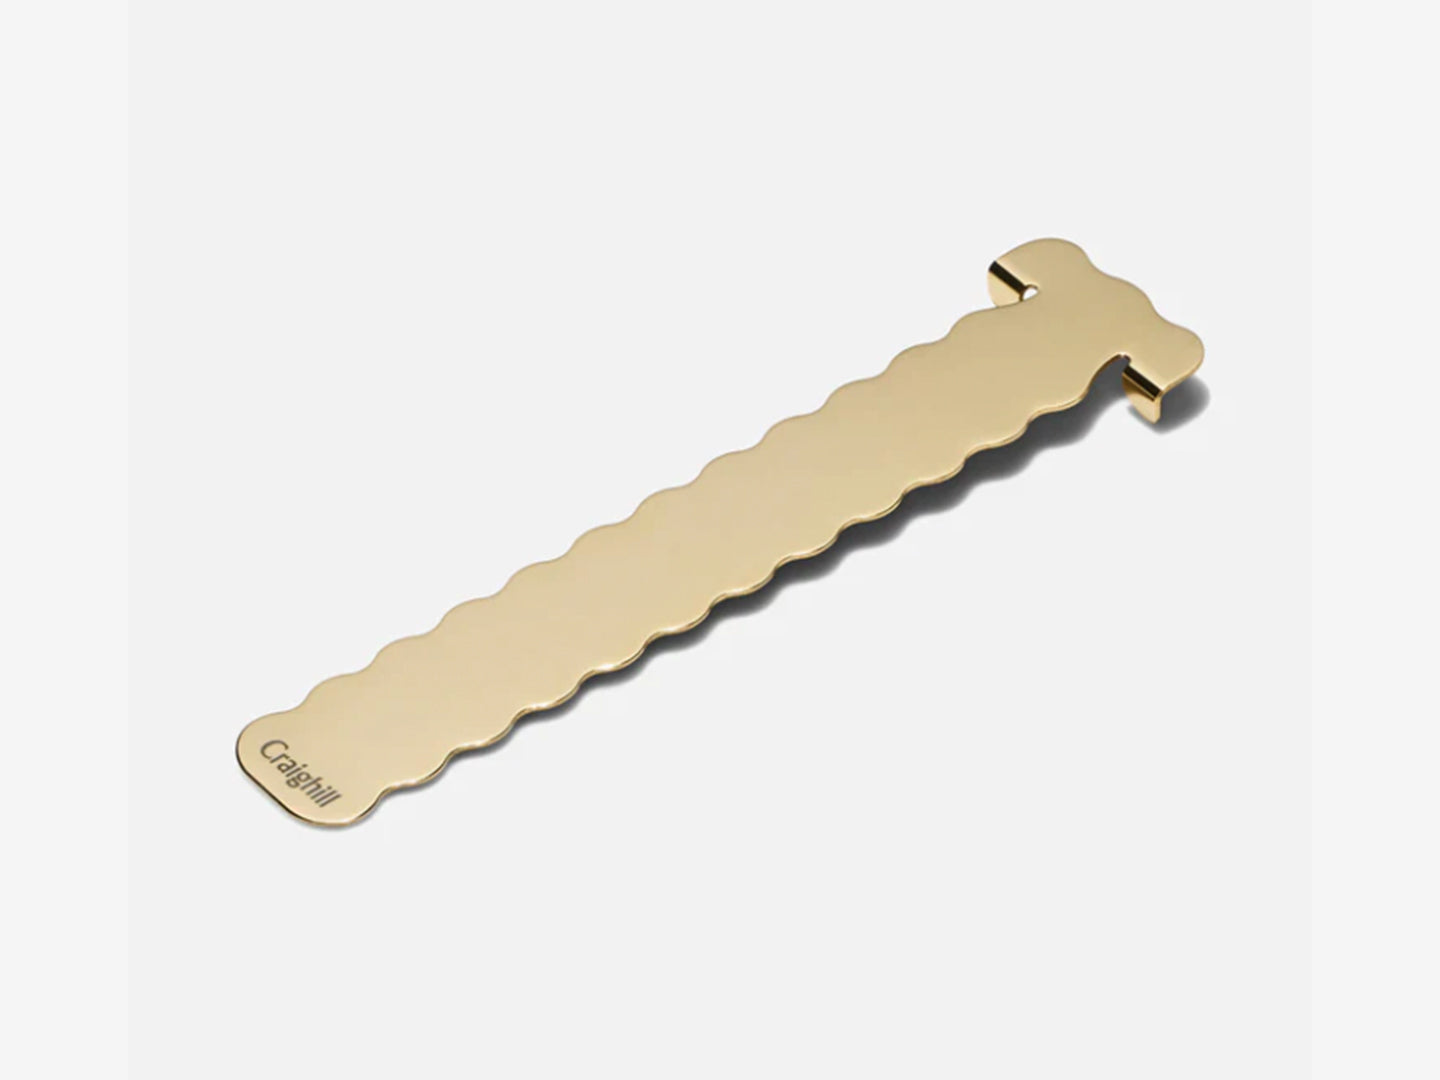 Perch Bookmark - vapor brass